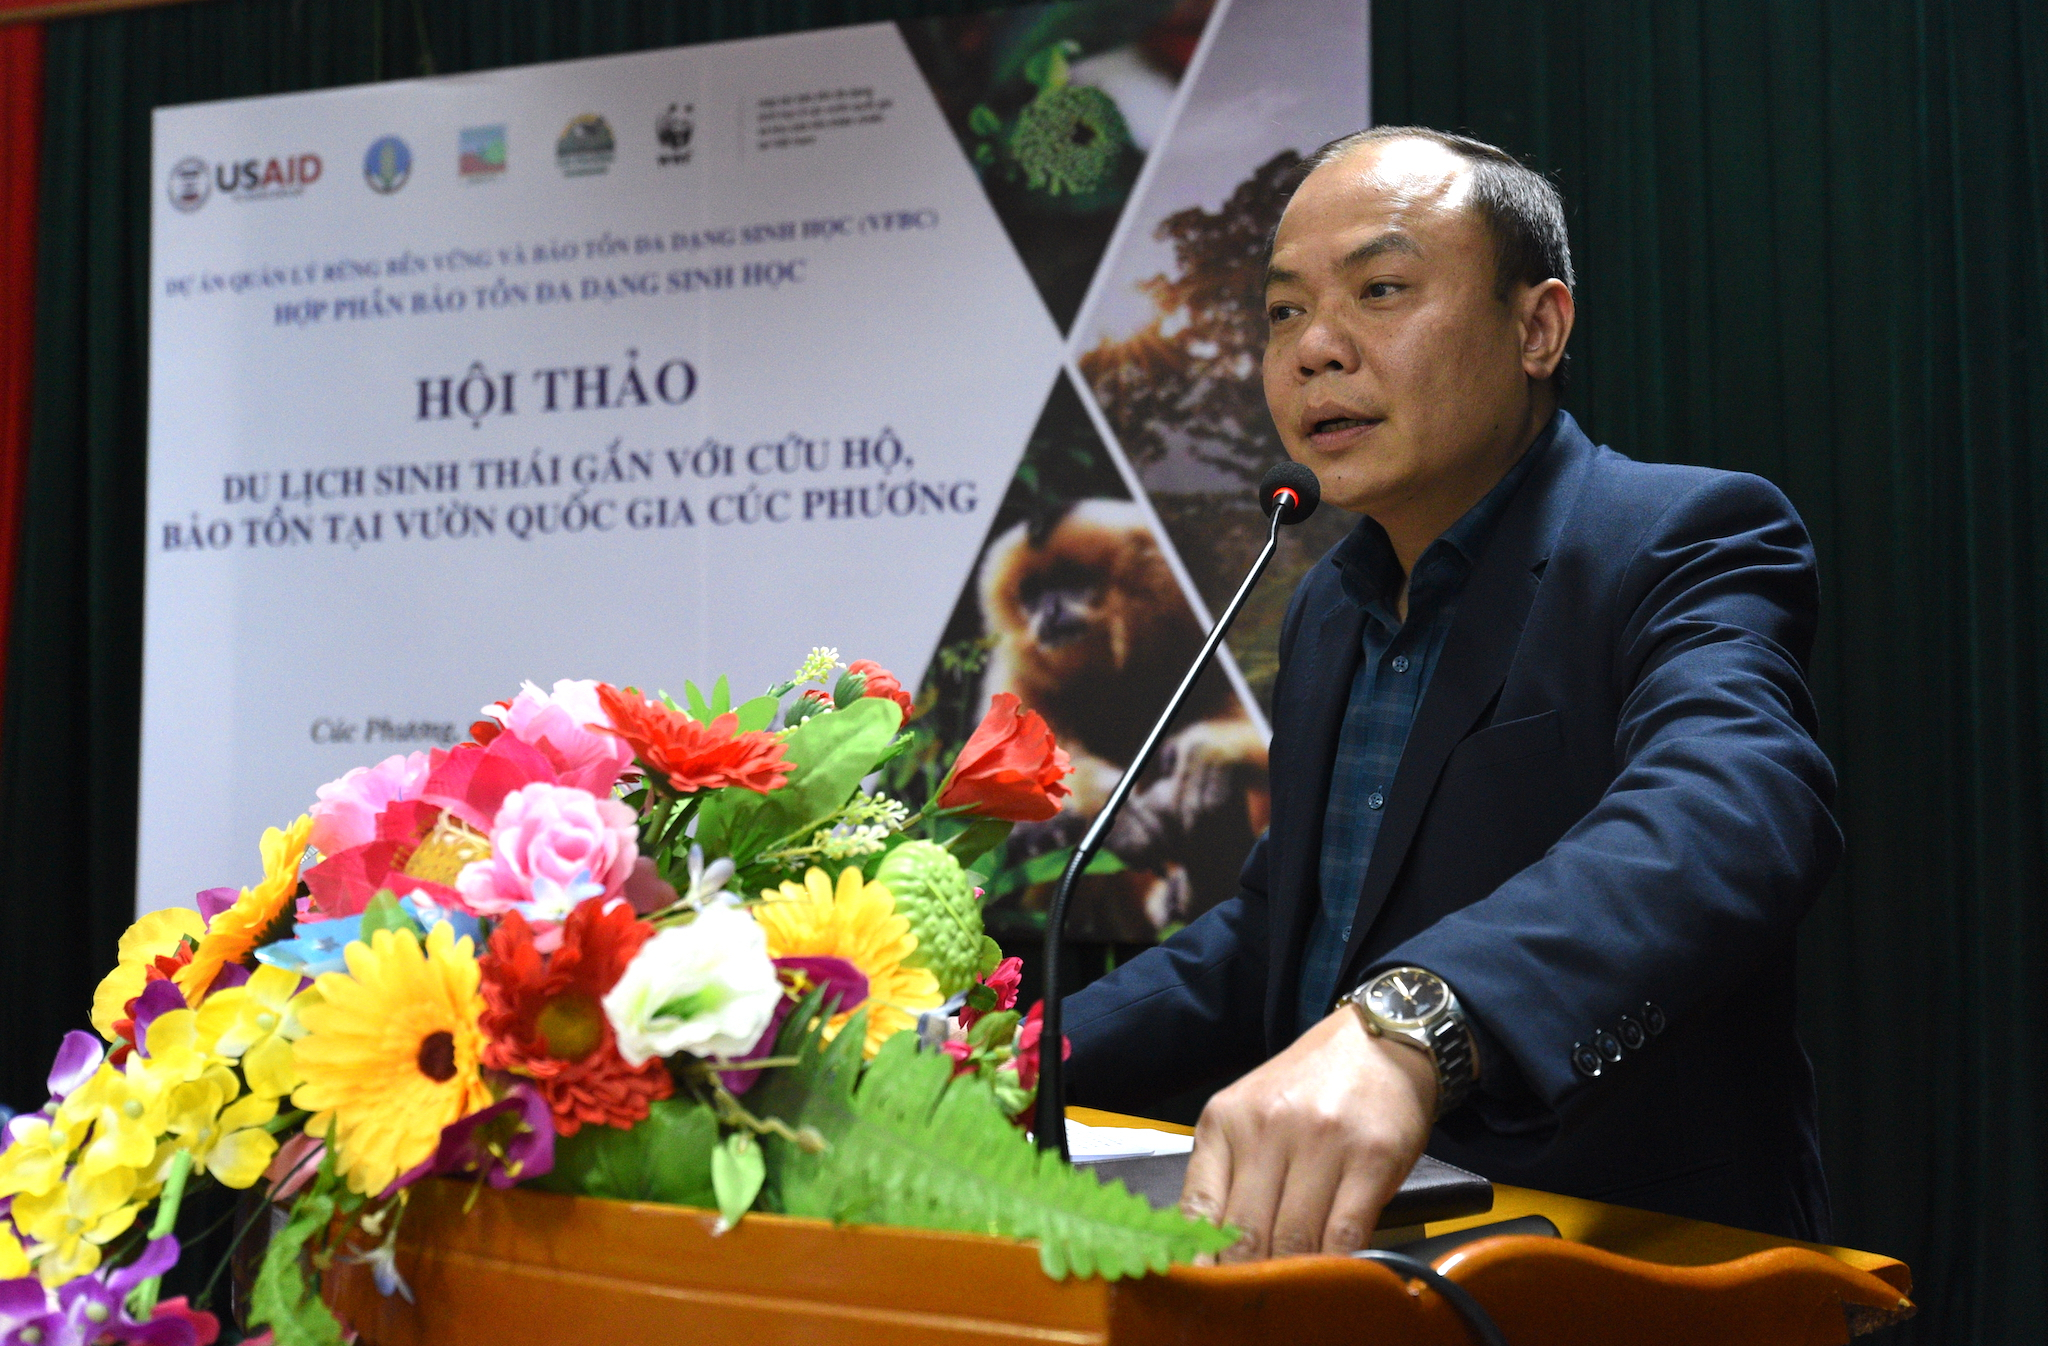 Ông Nguyễn Văn Chính, Giám đốc Vườn Quốc gia Cúc Phương chia sẻ về vấn đề du lịch gắn với bảo tồn. Ảnh: Tùng Đinh.